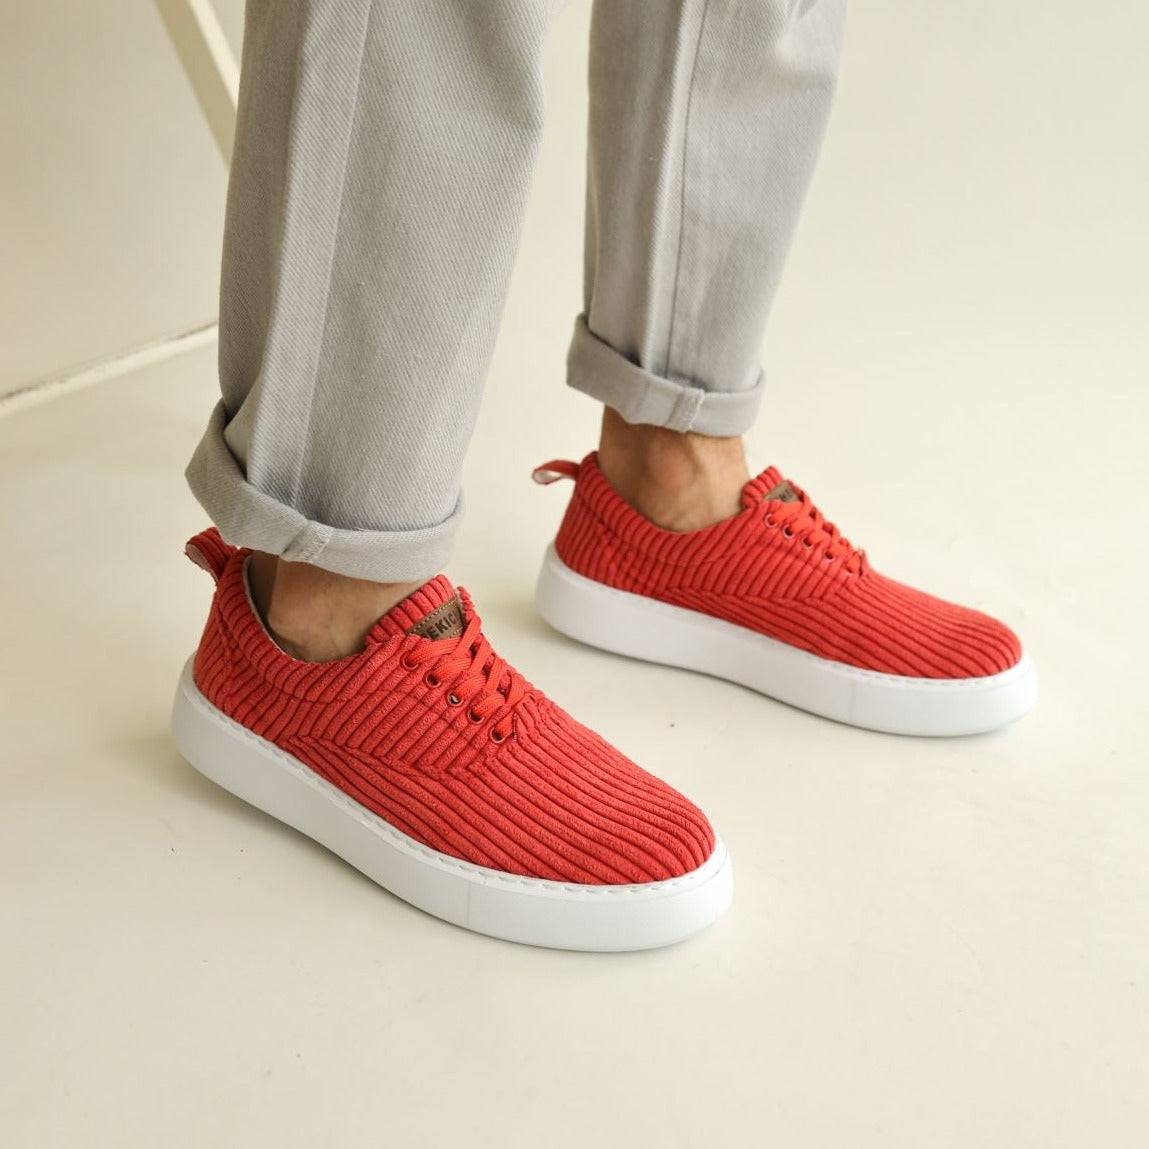 Men's Light Weight Summer Sneakers | Mario in Red